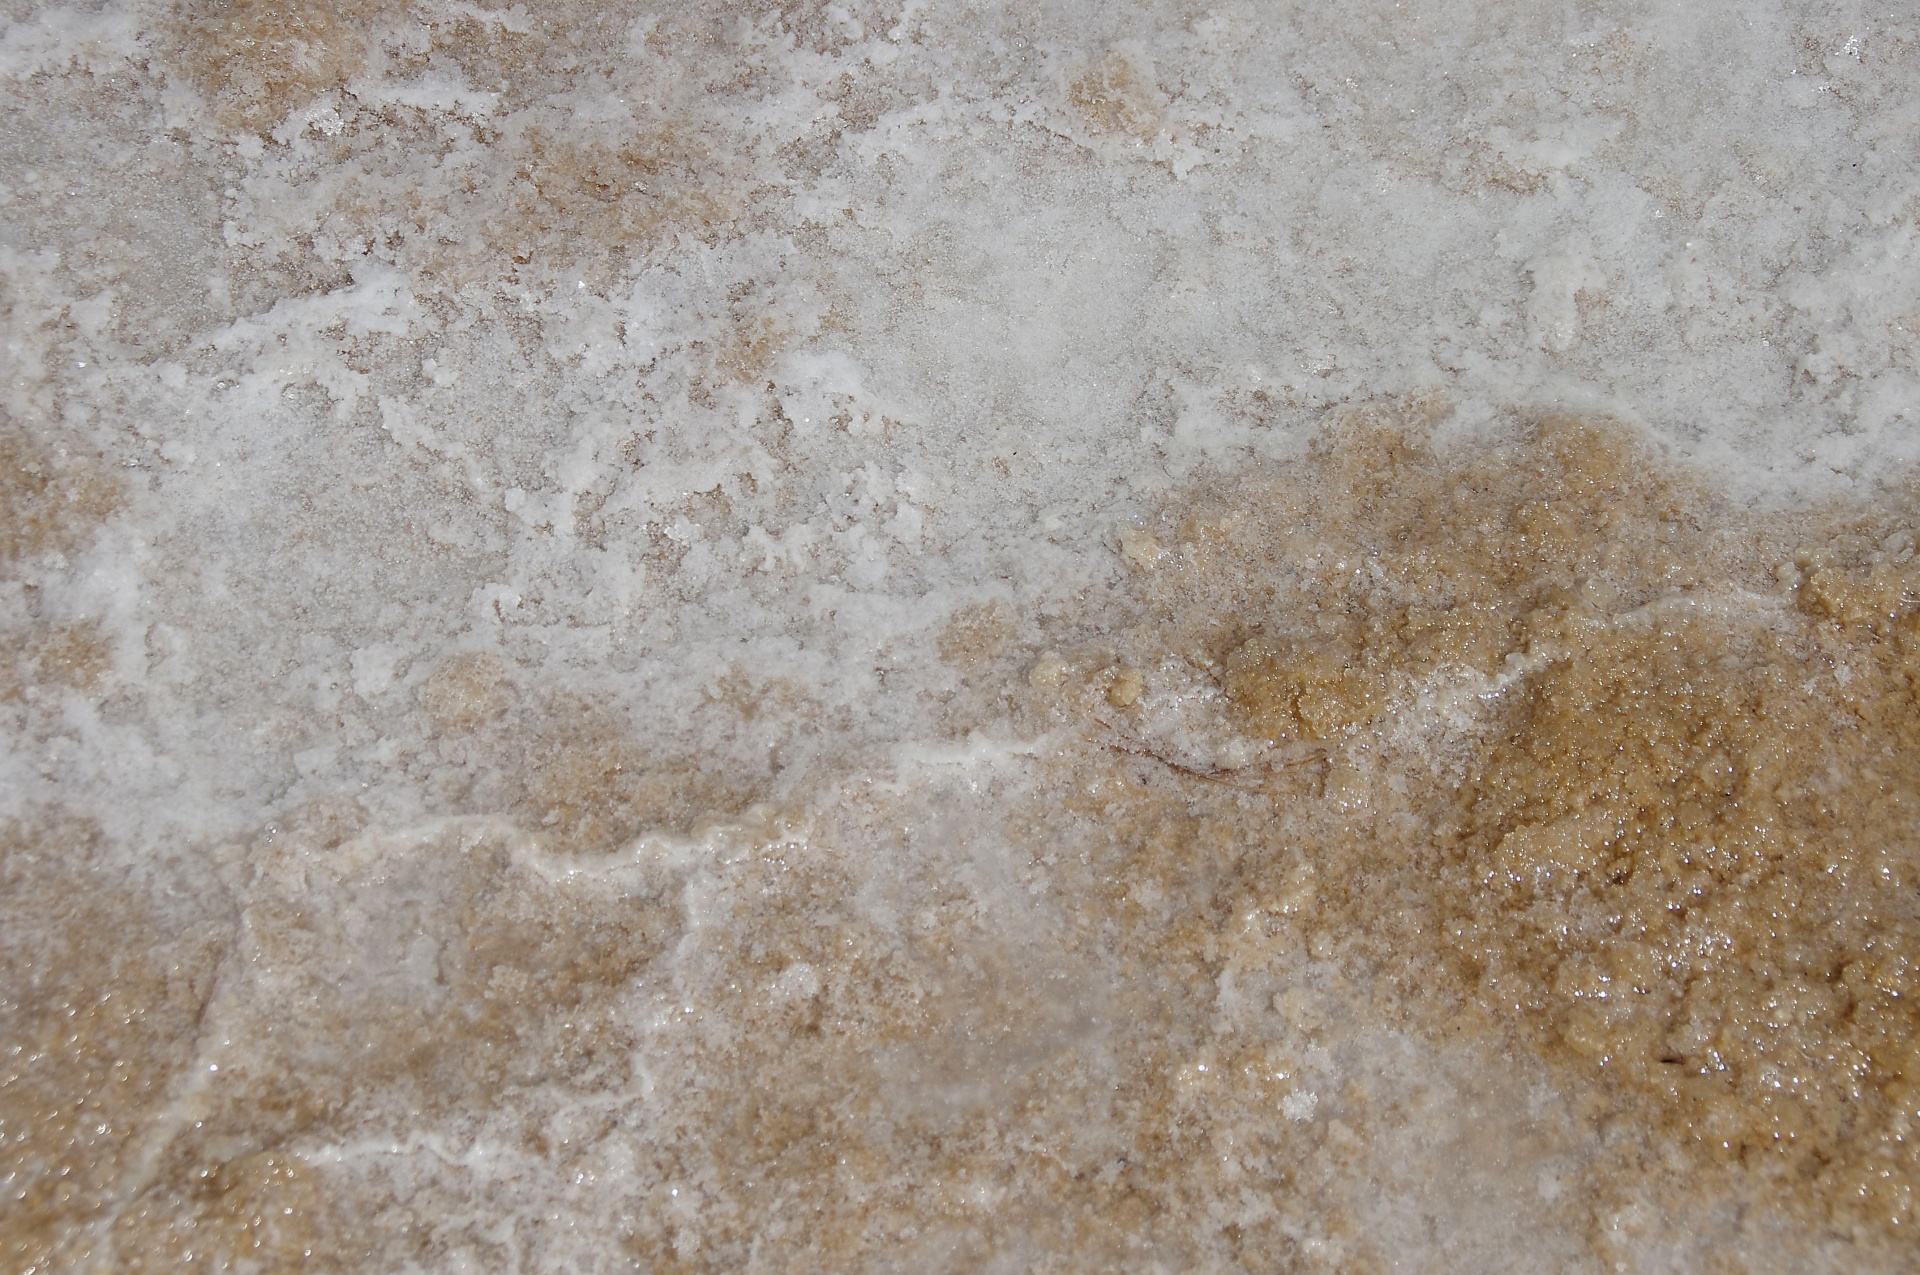 Salt Crystals On Beach Textures